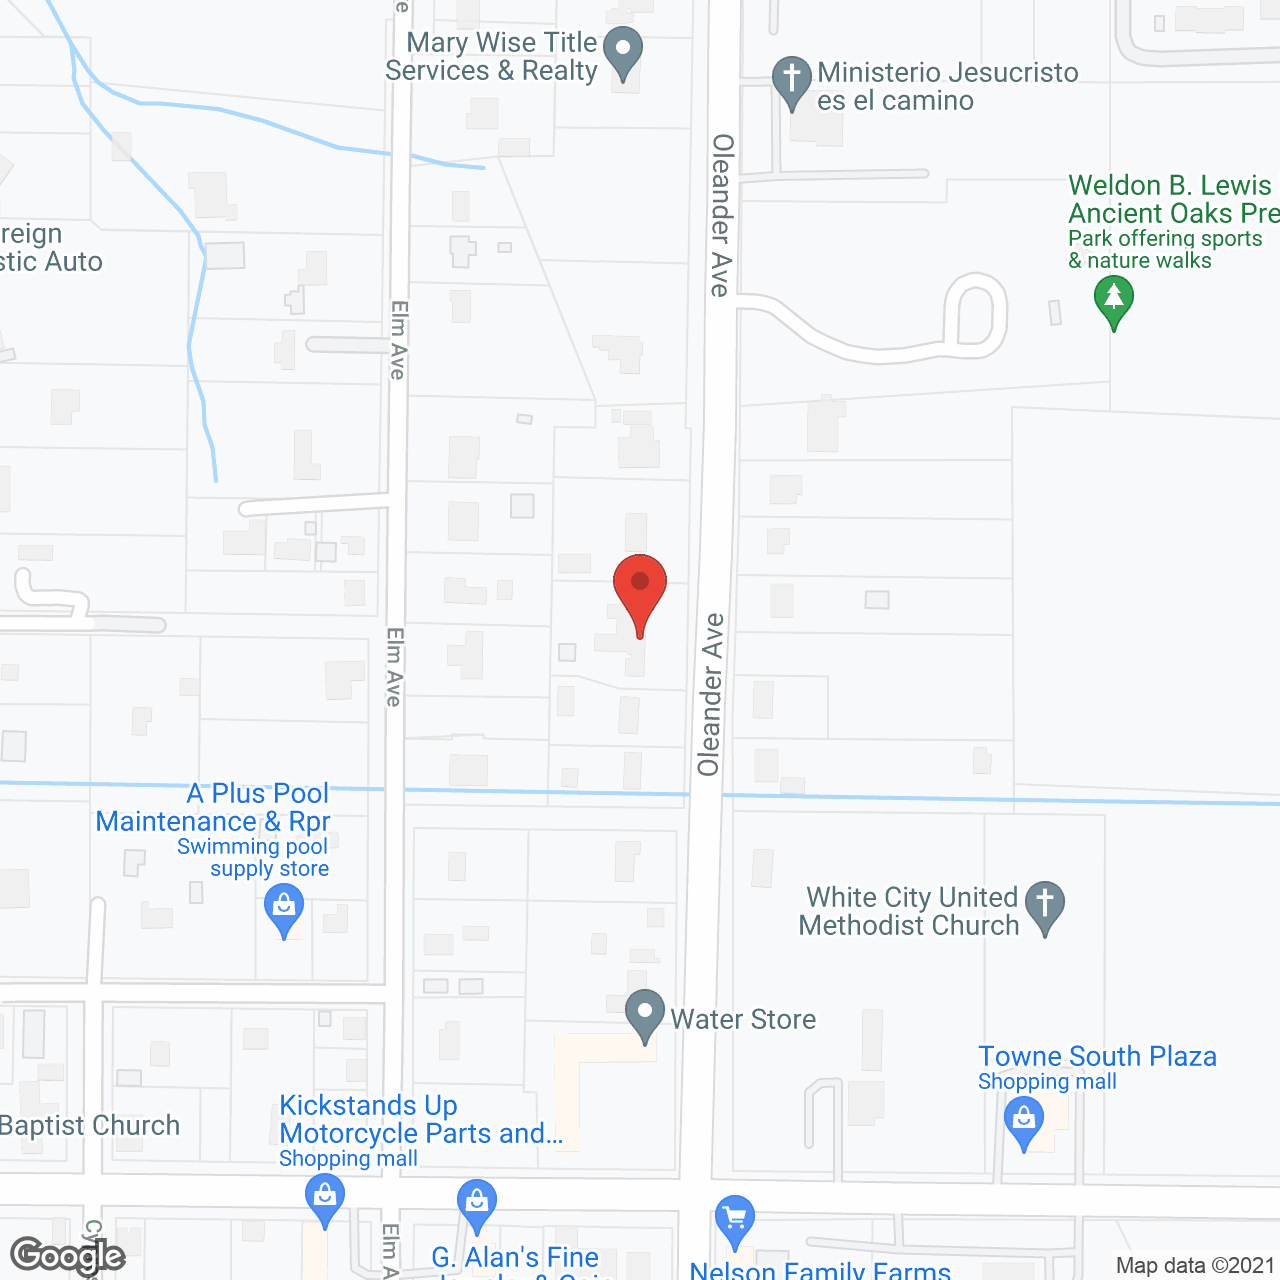 Divine Senior Care in google map